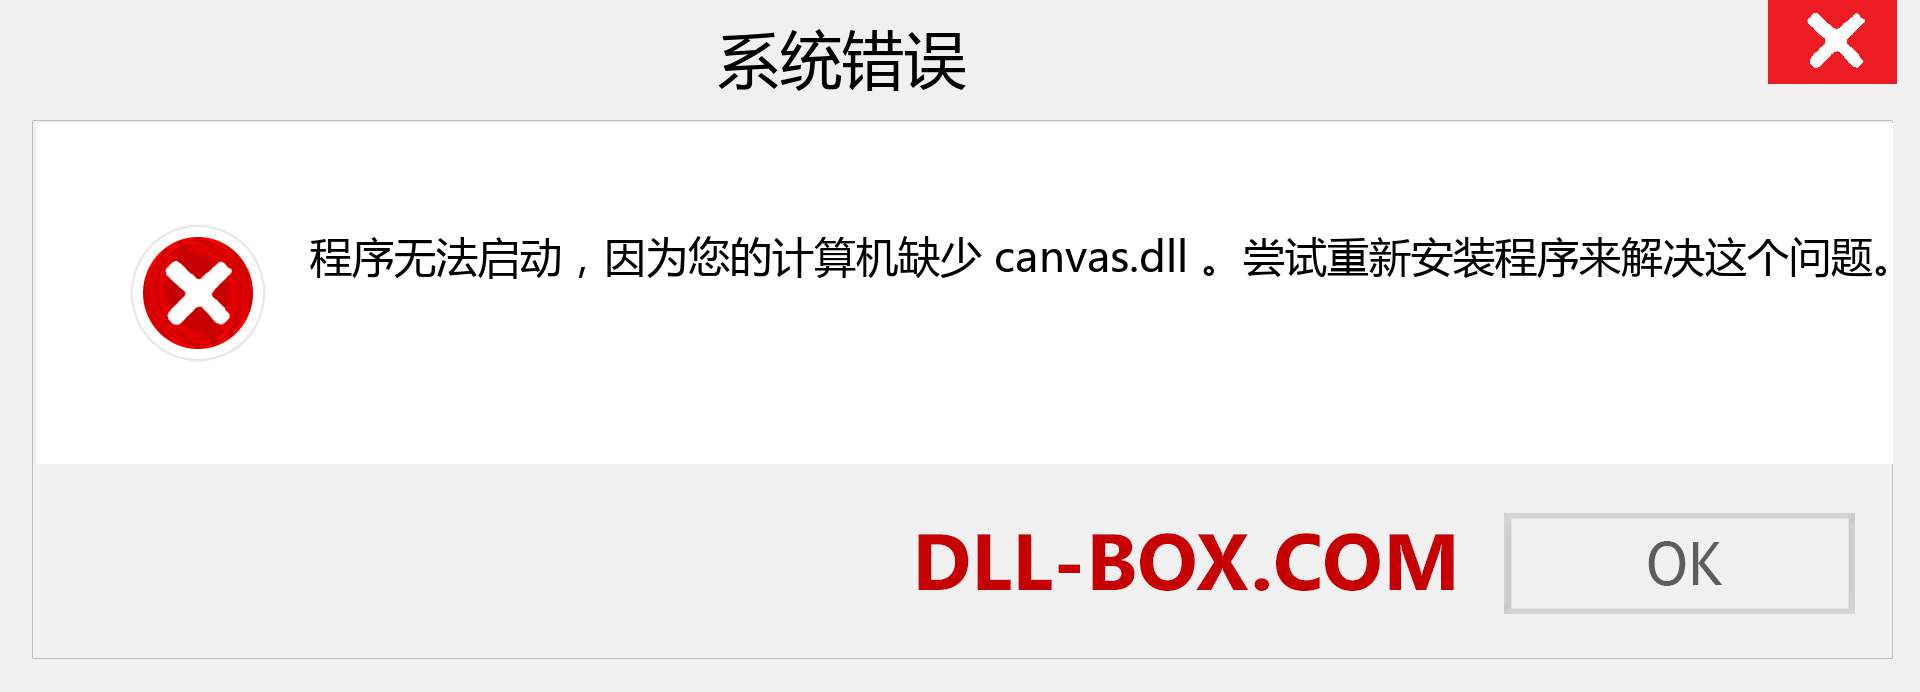 canvas.dll 文件丢失？。 适用于 Windows 7、8、10 的下载 - 修复 Windows、照片、图像上的 canvas dll 丢失错误